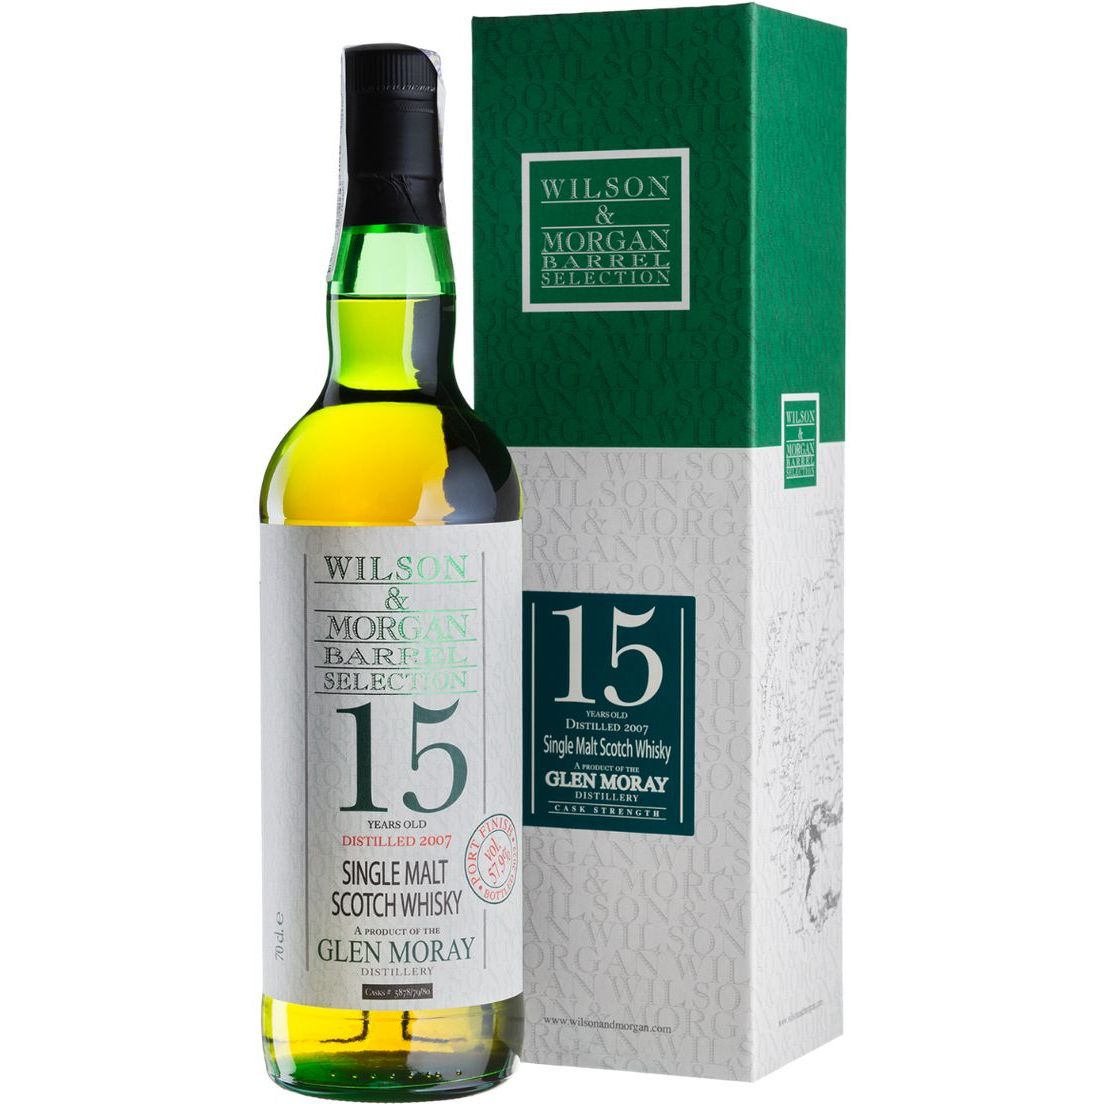 Віскі Wilson & Morgan Glen Moray 15 yo Port Cask #5878/79/80 Single Malt Scotch Whisky 57.9% 0.7 л у подарунковій упаковці - фото 1